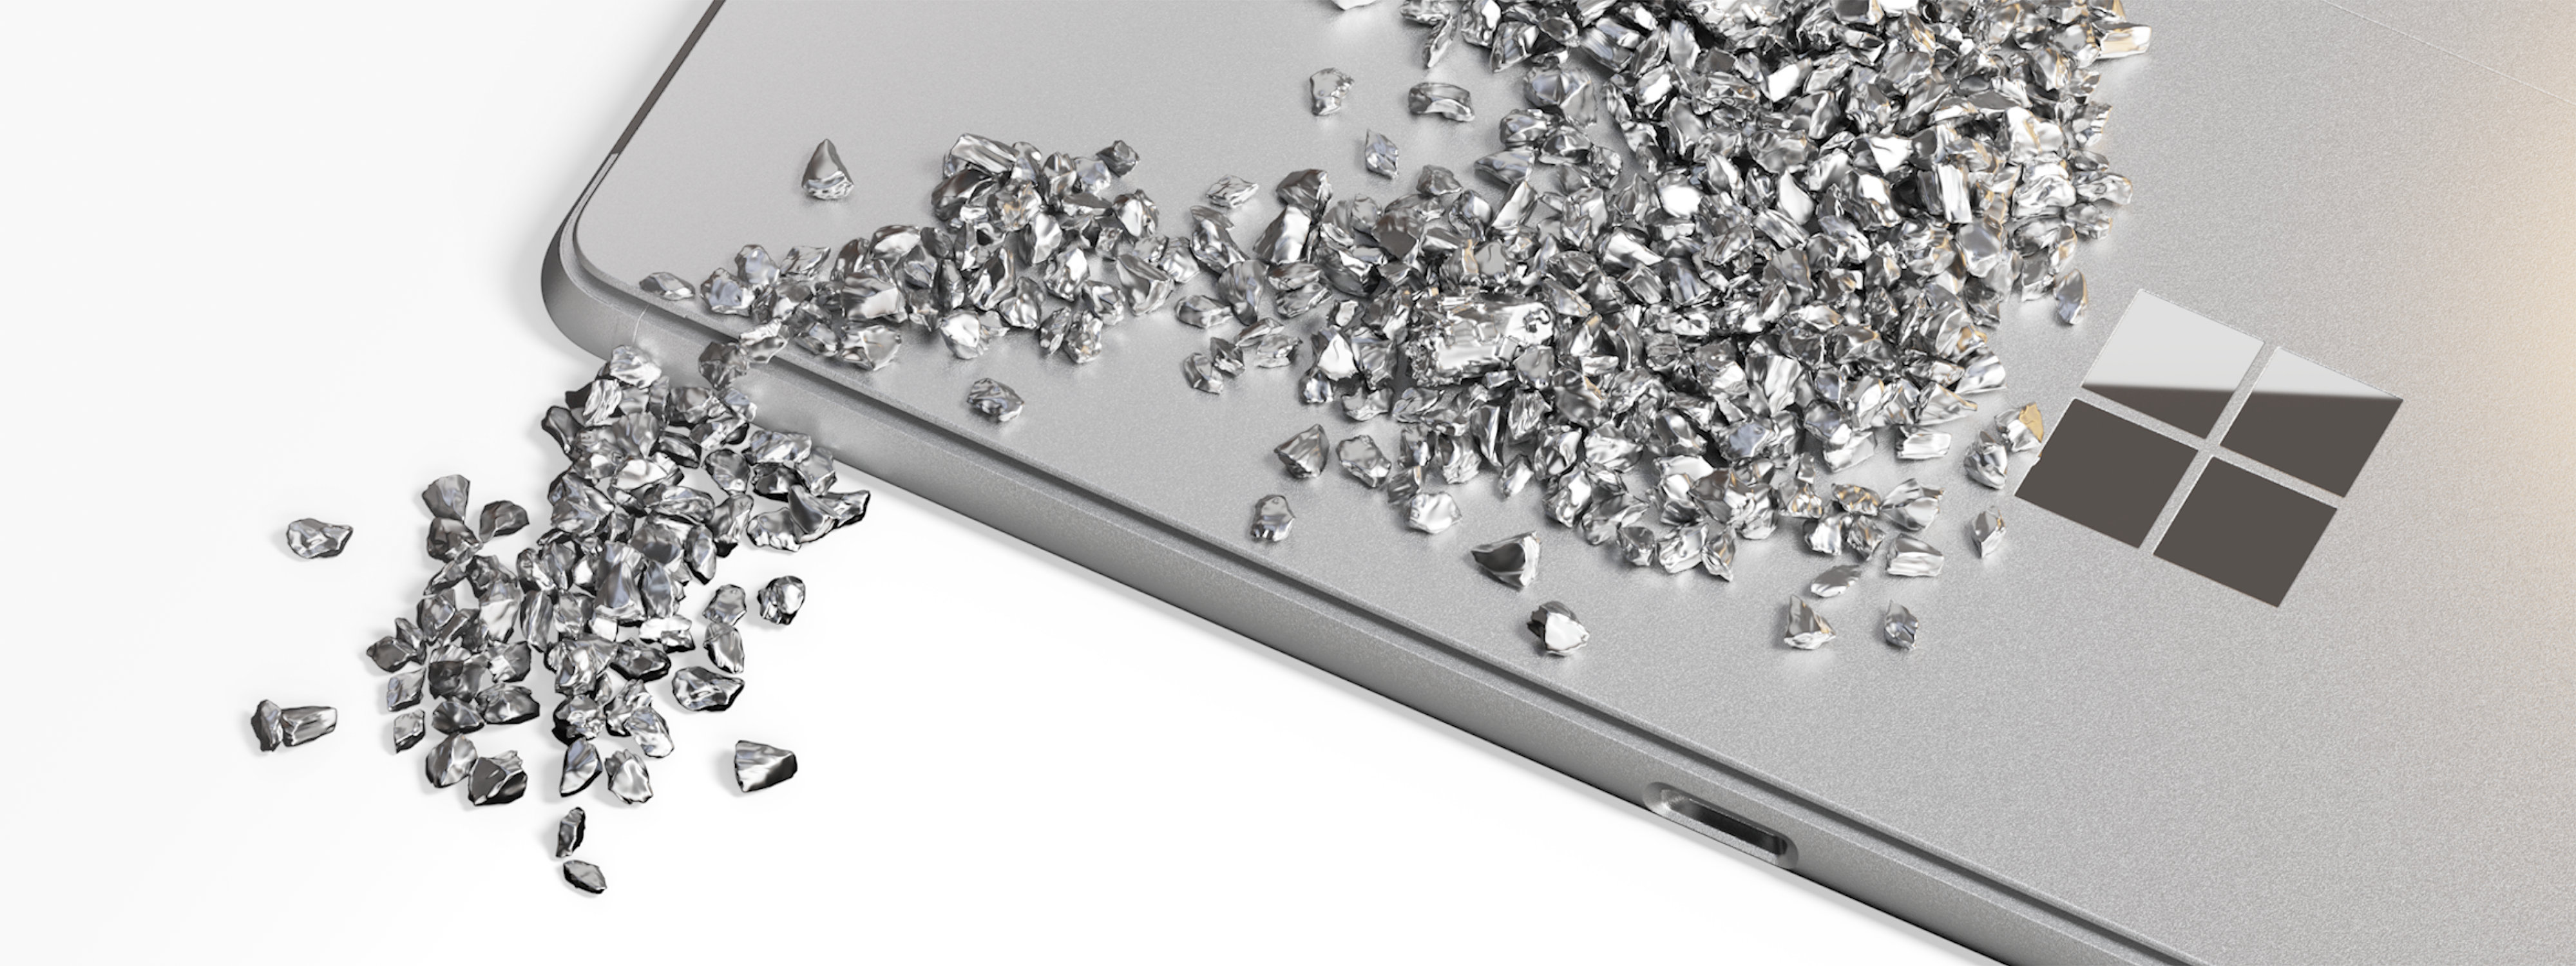 Ein Bild, das das geschlossene Surface Pro zeigt, mit Partikeln in einem Wellenmuster über dem Gerät, das die Verwendung von recycelten Materialien symbolisiert.